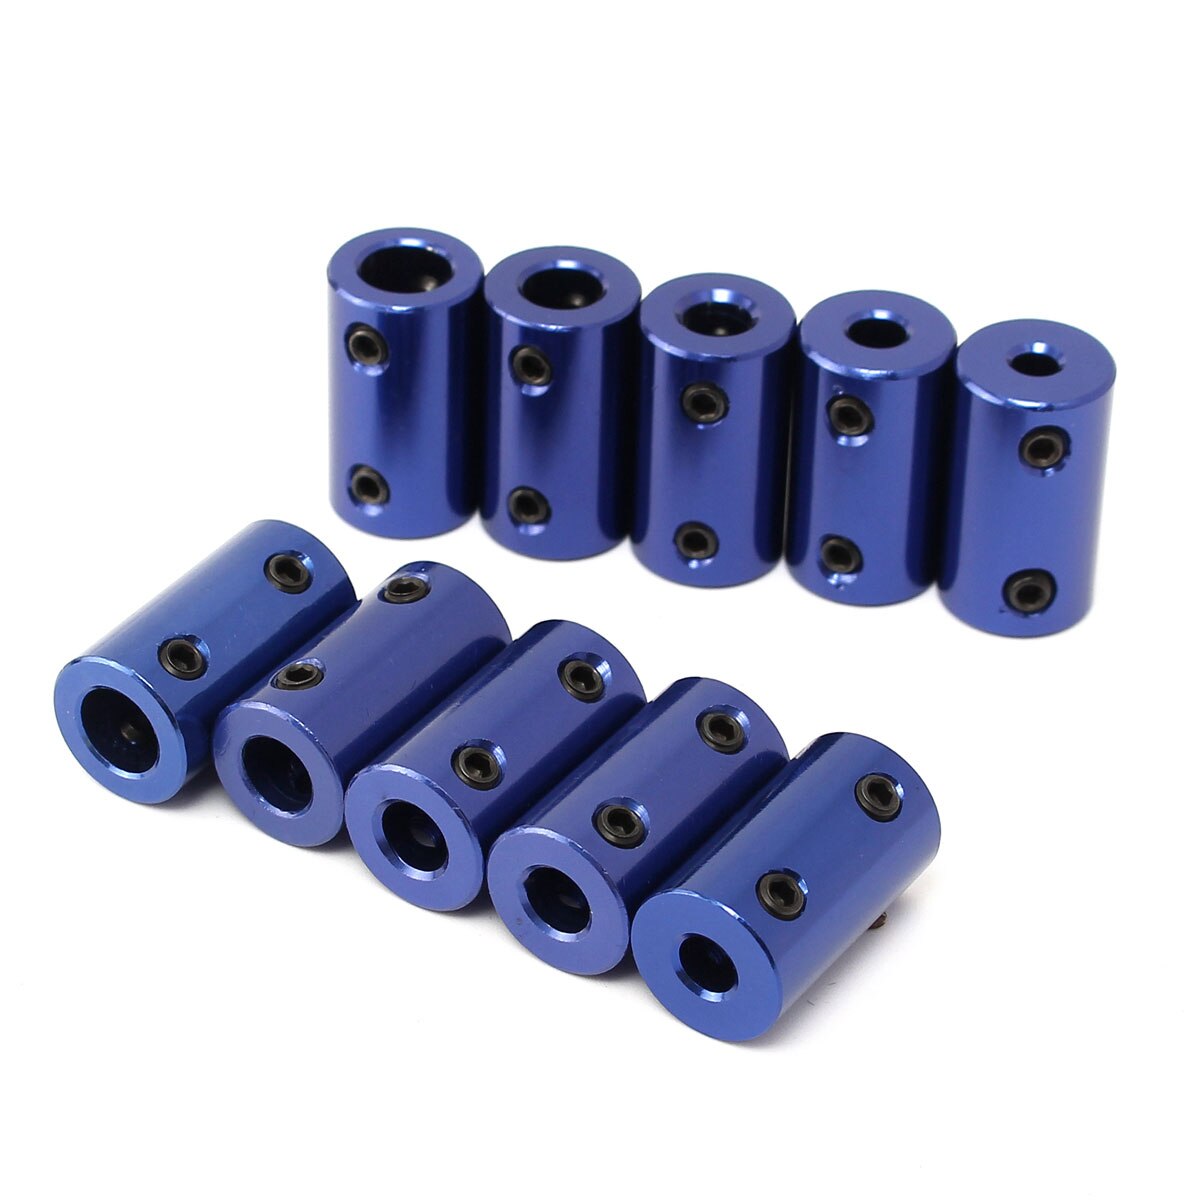 1 stk. blå aluminiumslegering motorakselkobling 4/5/6/8mm koblinger stålstålkobling drevmotorforlængelsesaksel